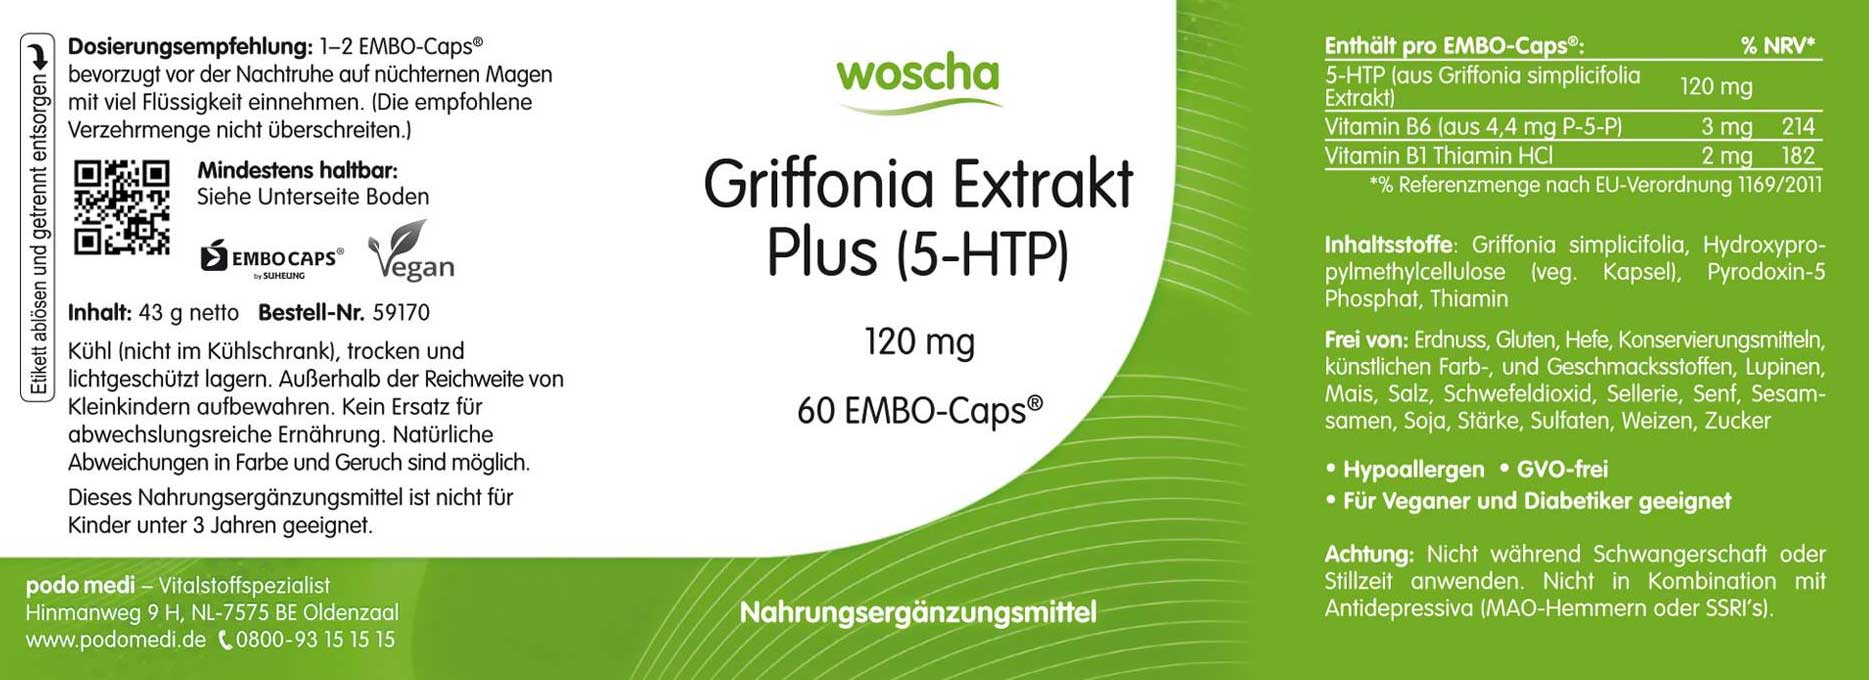 Woscha Griffonia Extrakt Plus von podo medi beinhaltet 60 EMBO-CAPS Etikett